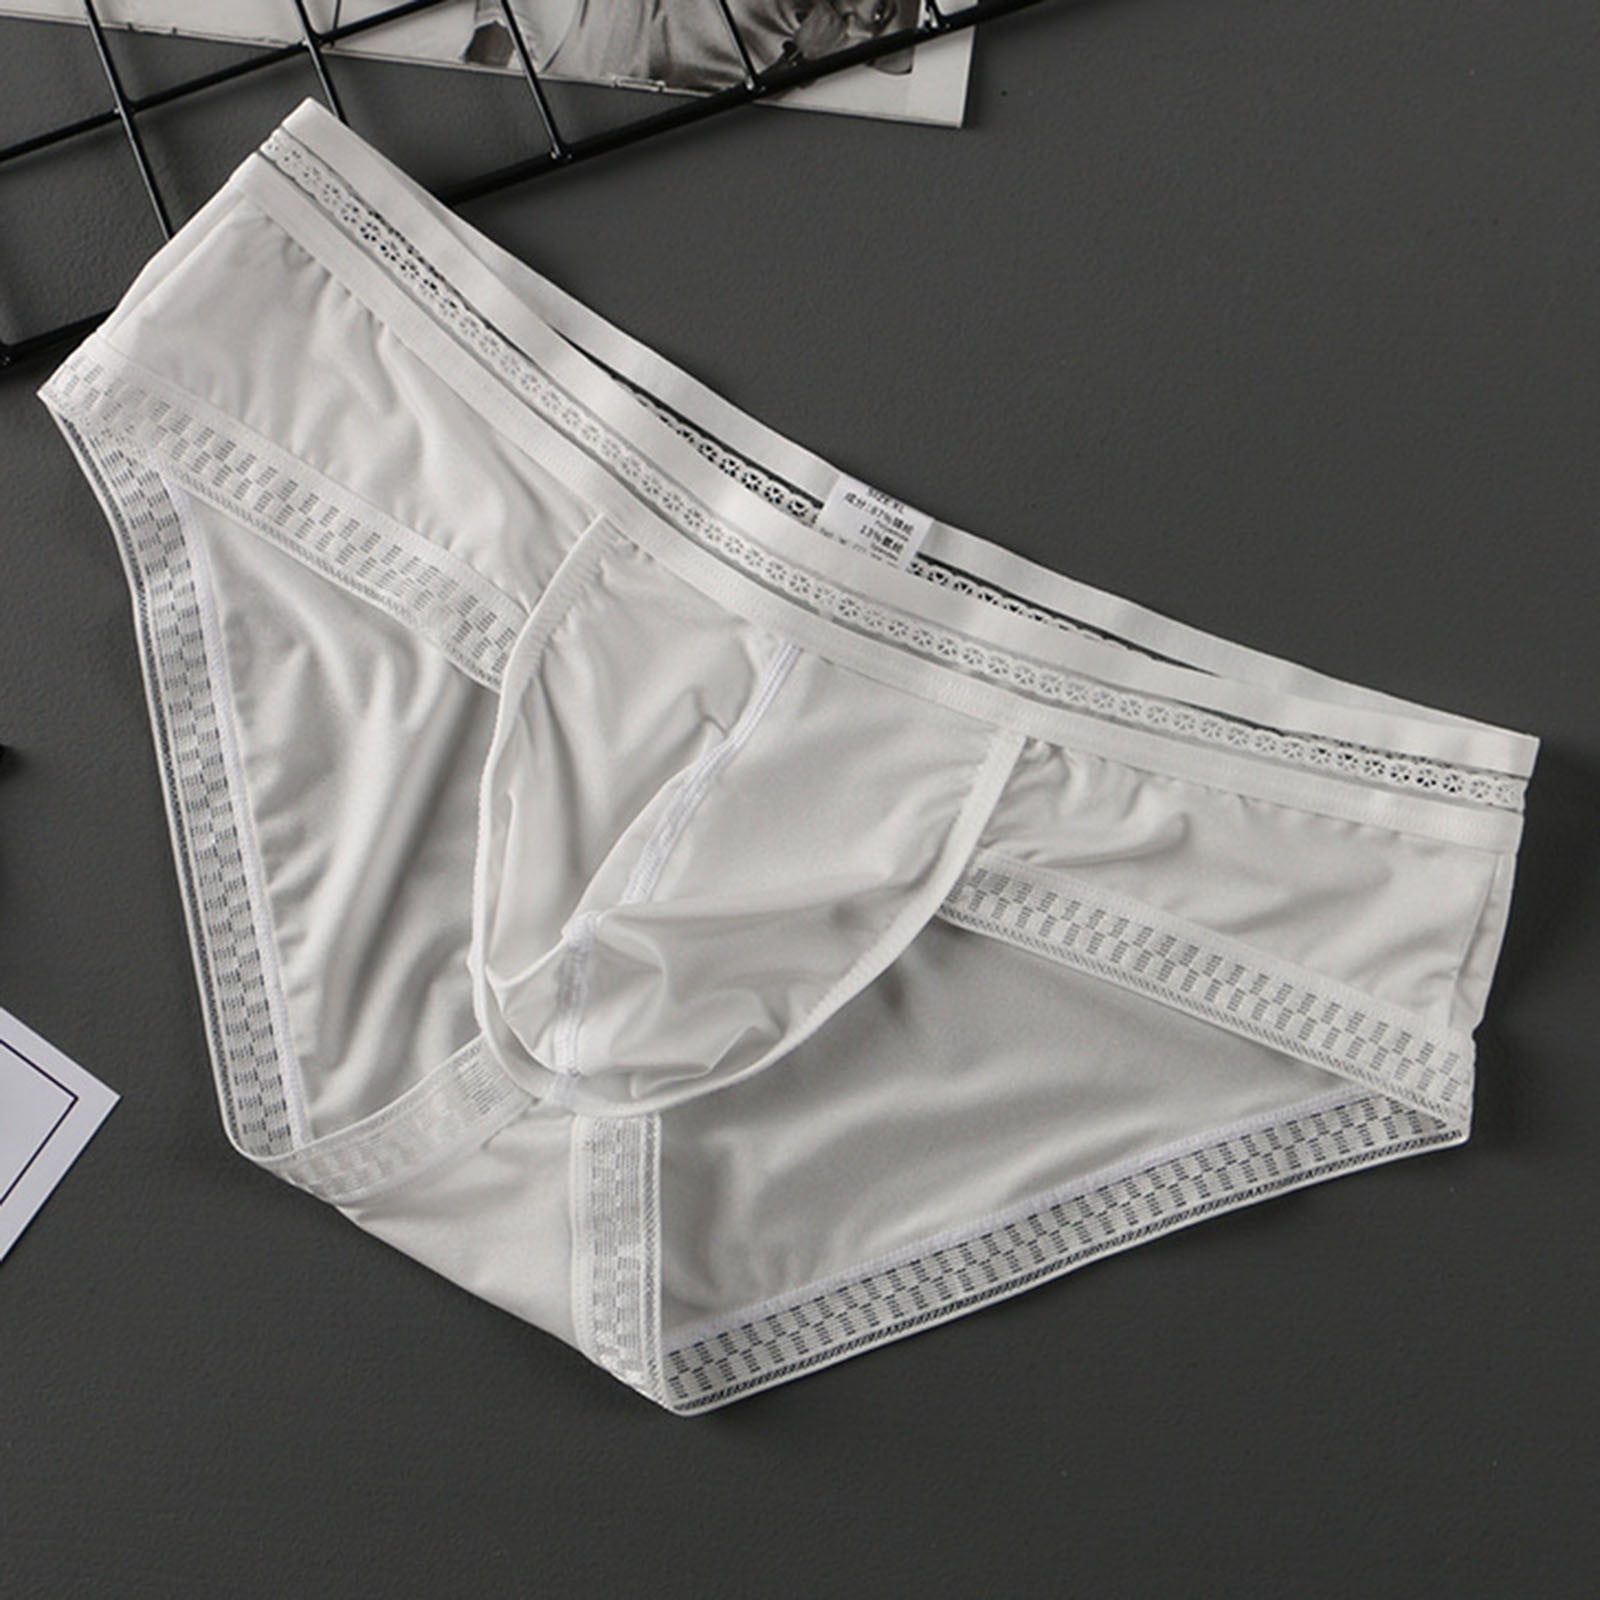 LEEy-world Men's Underwear Men's Soft Touch Eco Fiber Elastic Band Brief  White,3XL